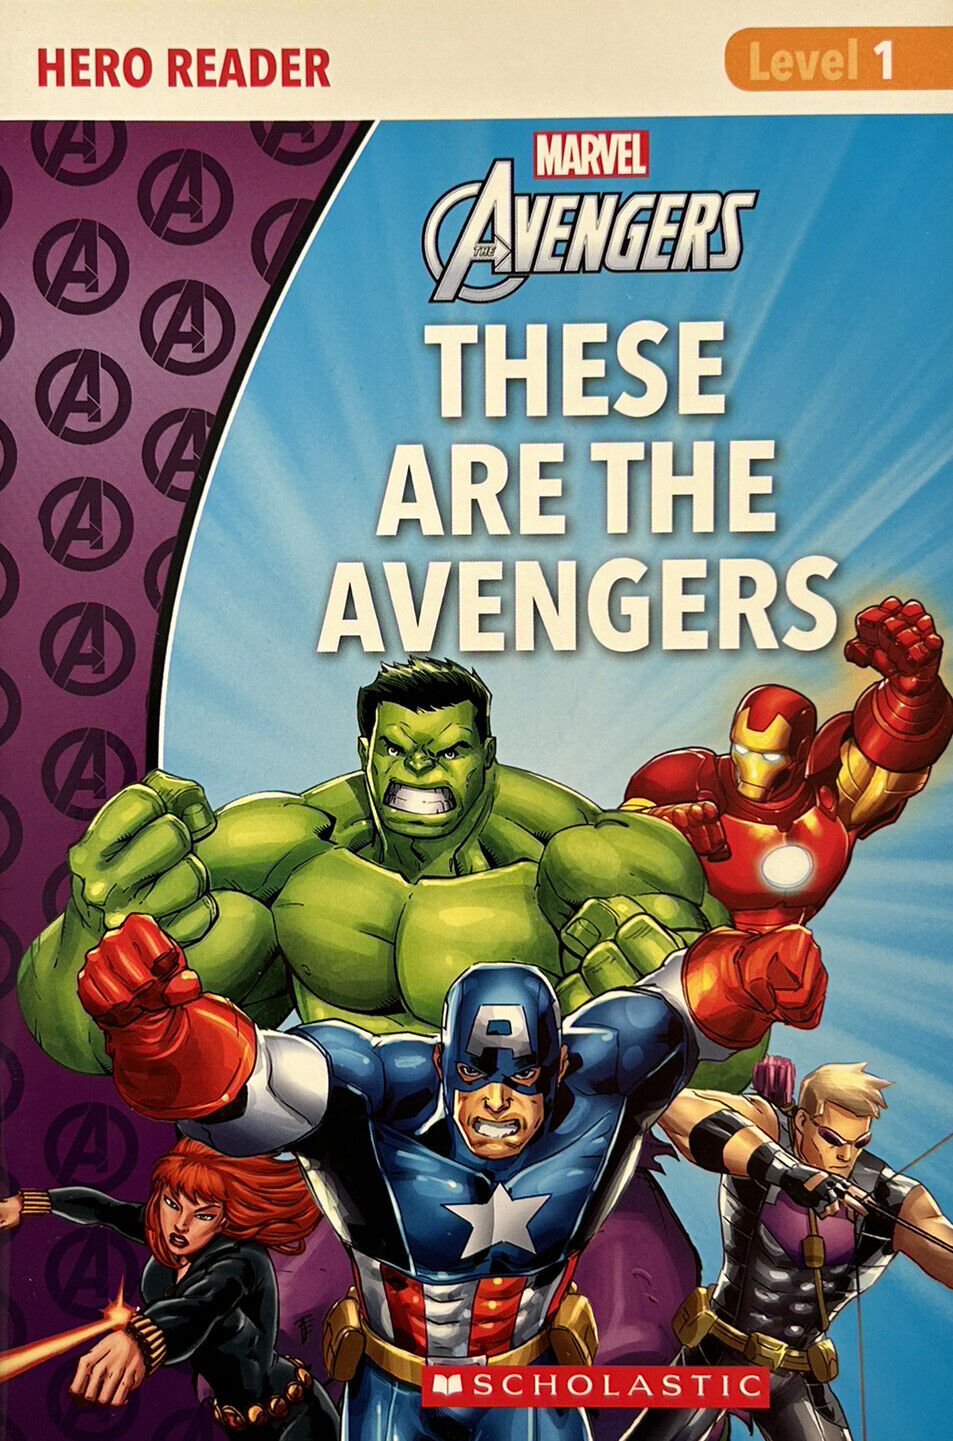 Marvel Books - AVENGERS: THESE ARE THE AVENGERS Hero Reader Level 1